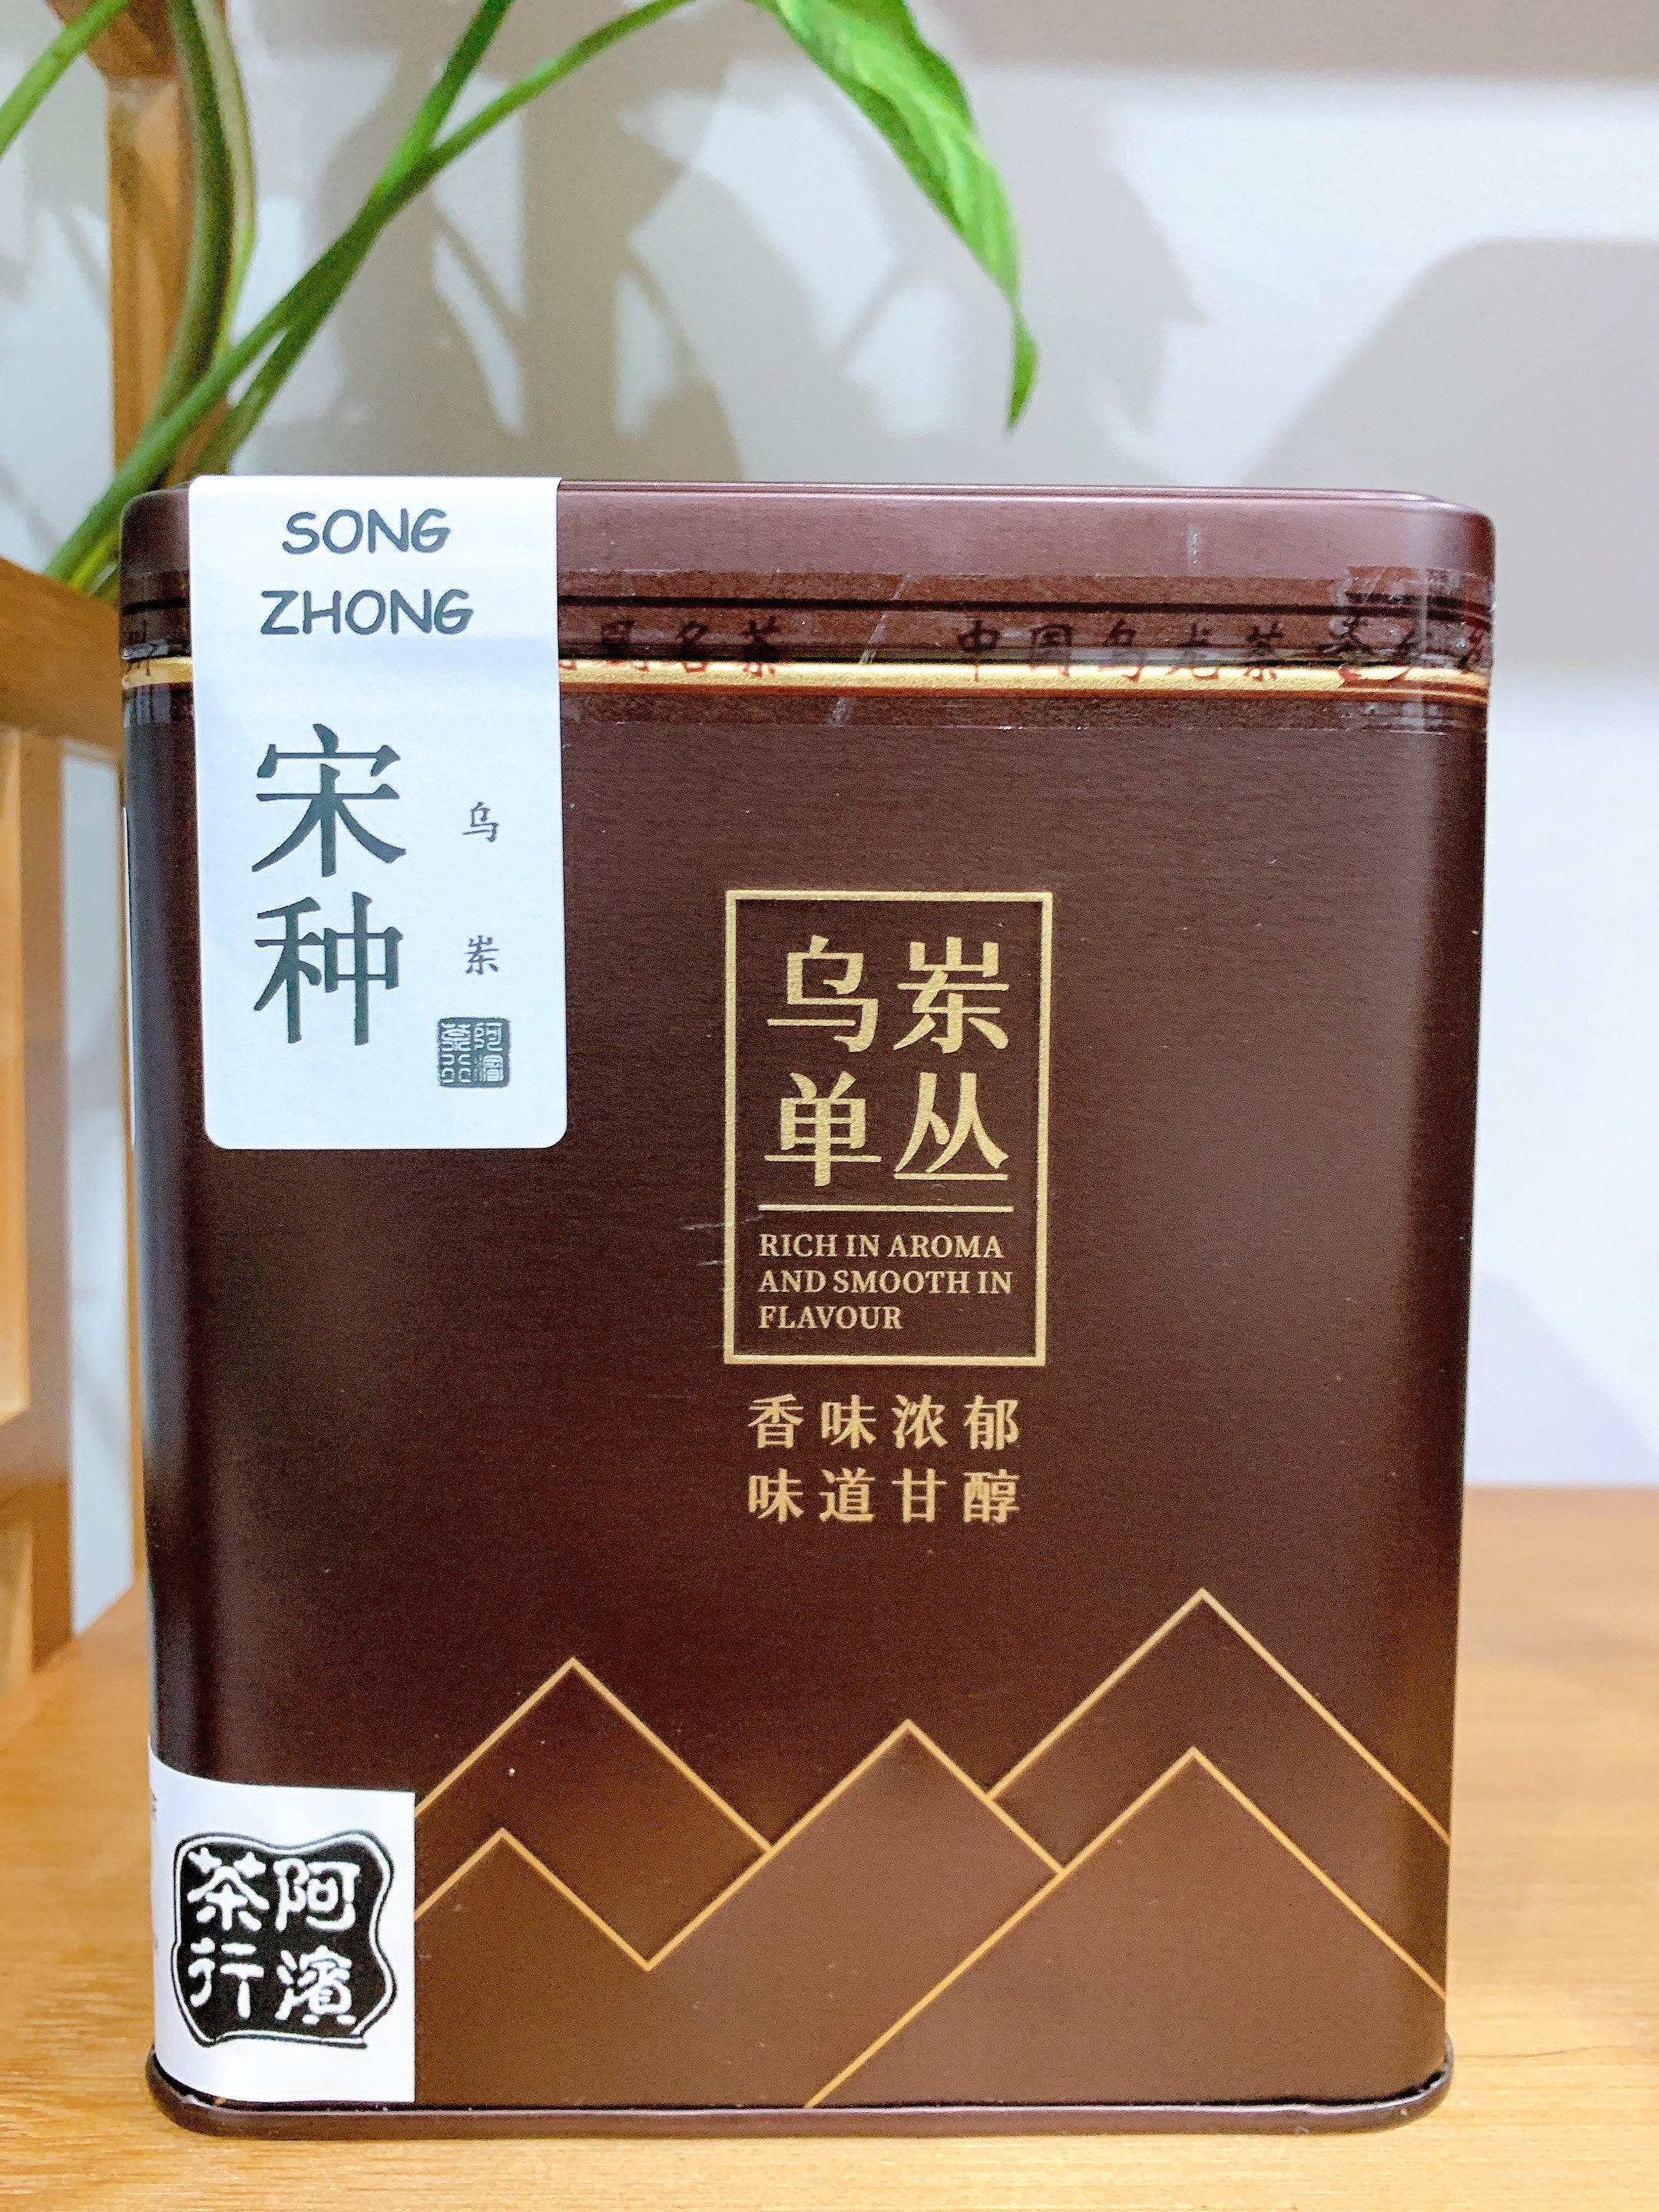 凤凰单丛 乌岽【宋种】来自宋朝的味道 Wudong 【Song Zhong】125g